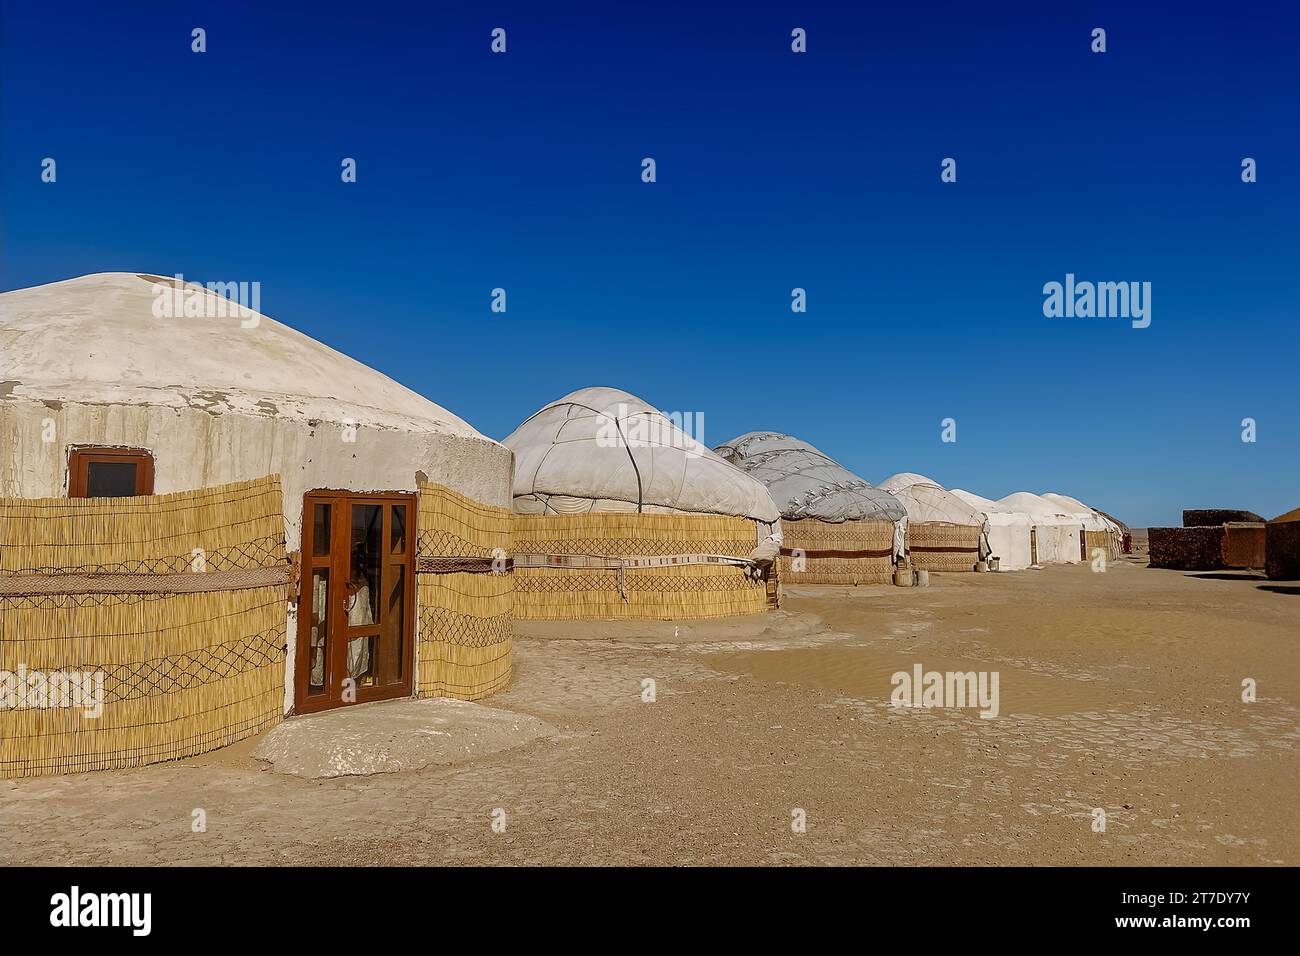 Yurt settlement in the desert, Kysylkum desert, uzbekistan Stock Photo